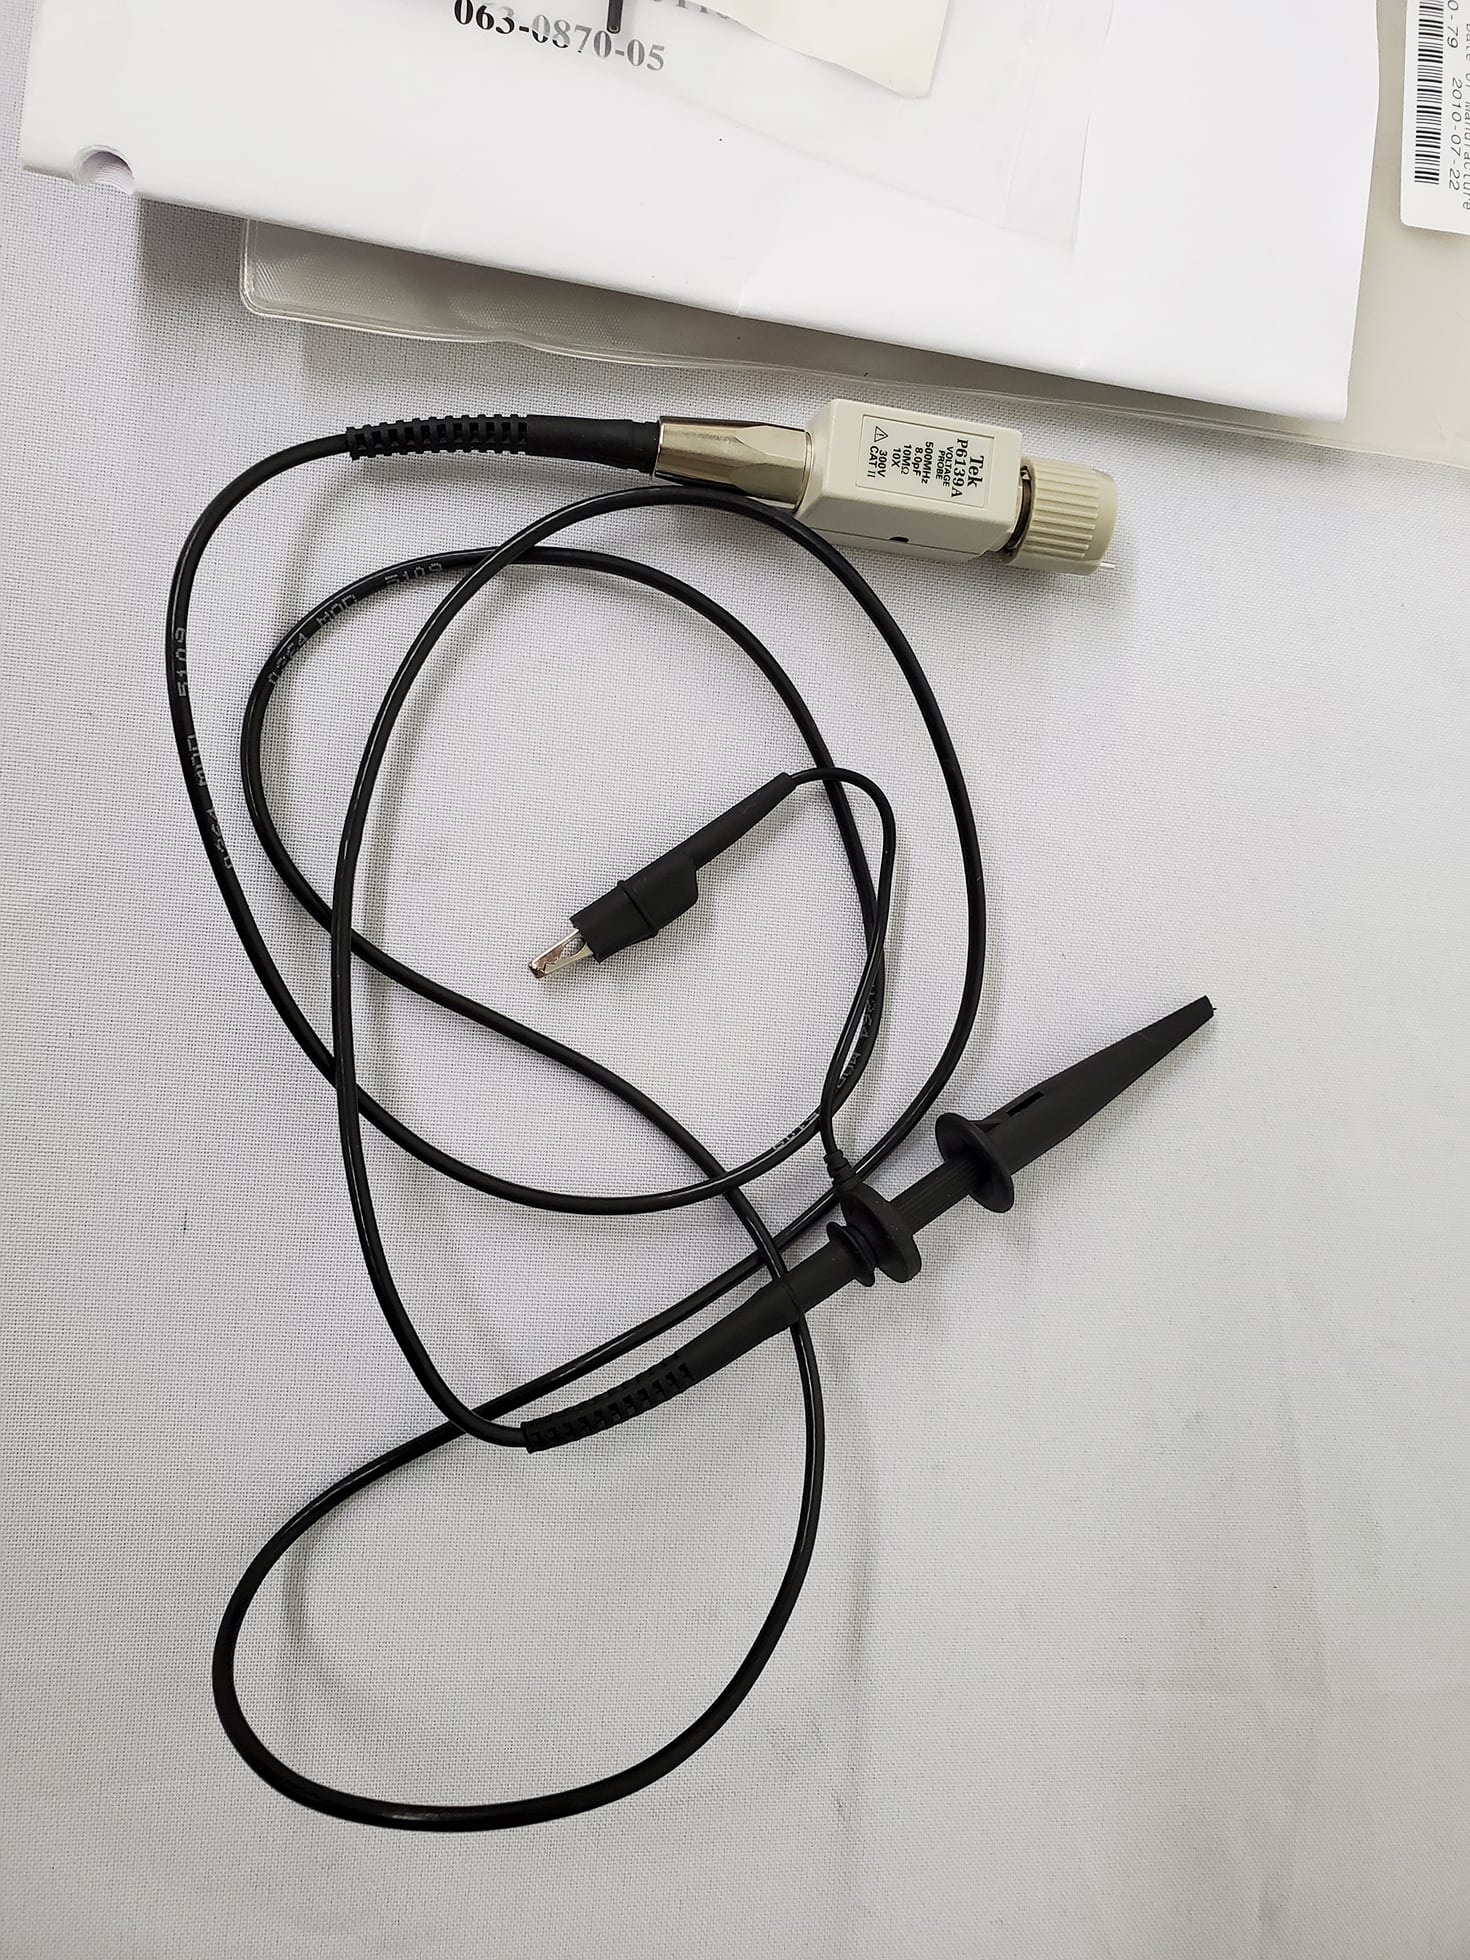 Tektronix P6139A Passive Voltage Oscilloscope Probe for sale online